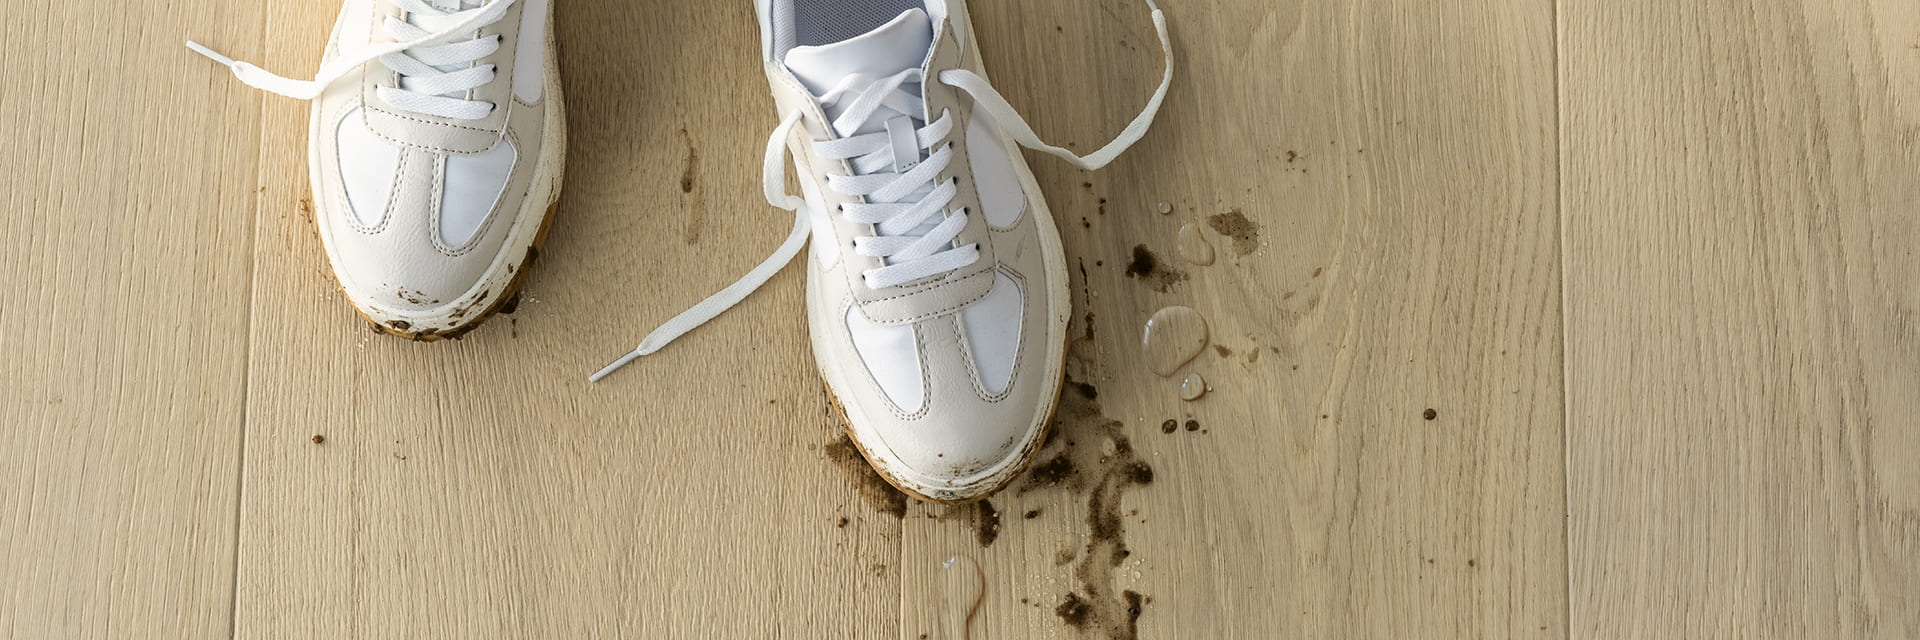 närbild av smutsiga skor med utspilld lera och vatten på ett beige parkettgolv